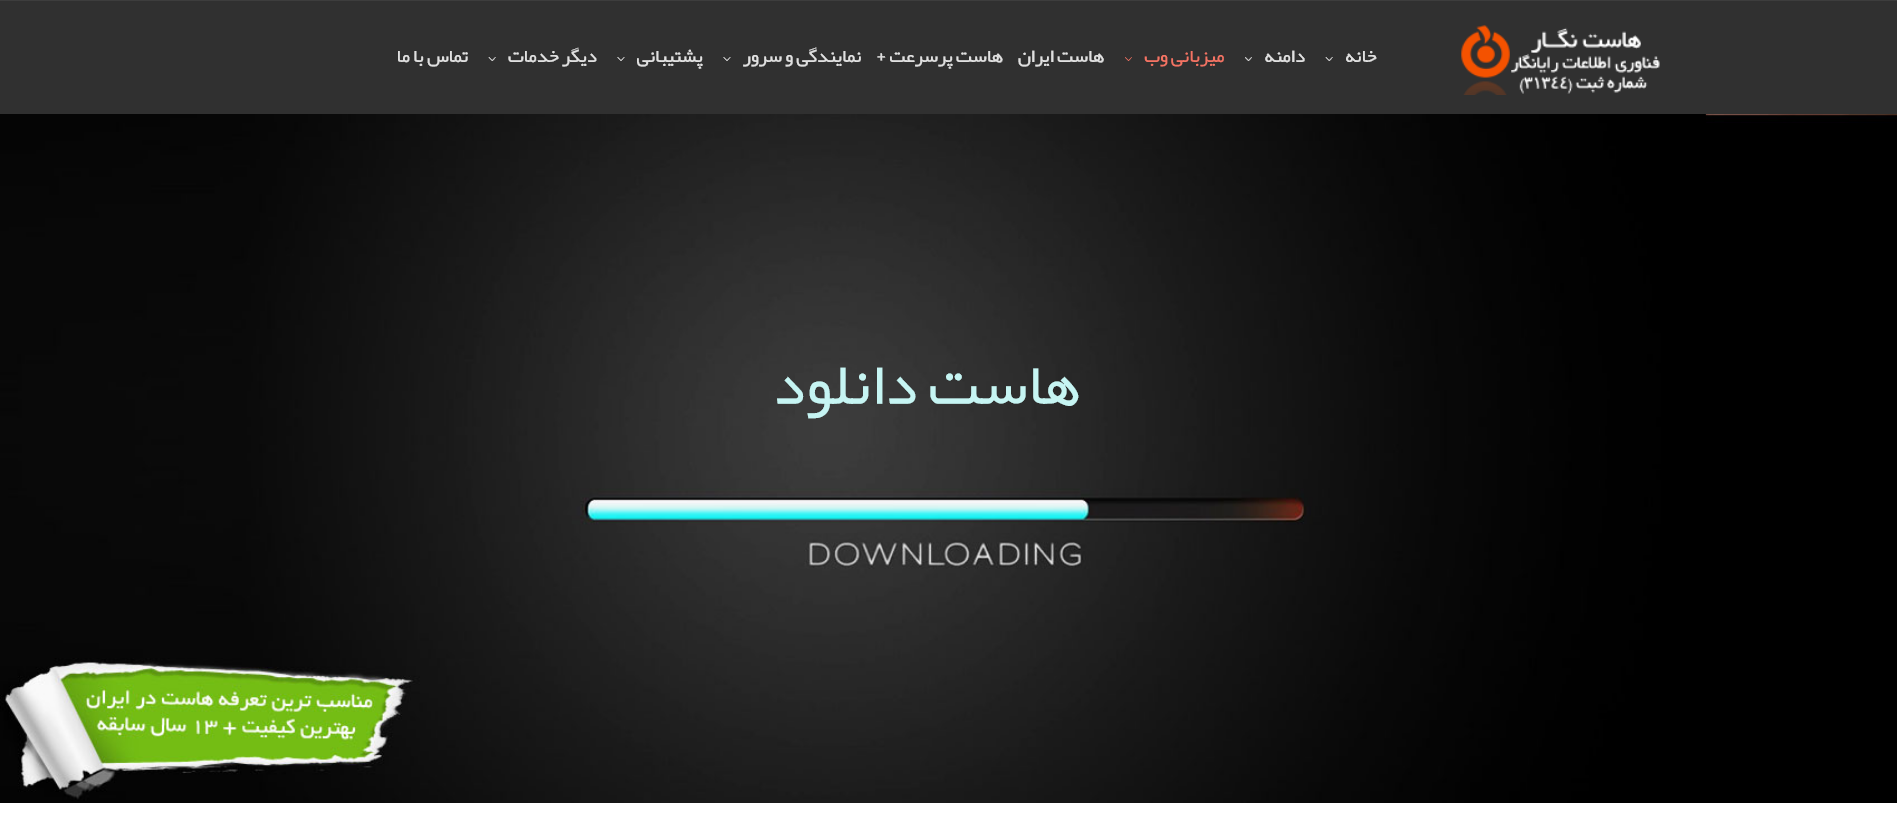 hostnegar download hosting mizbanju